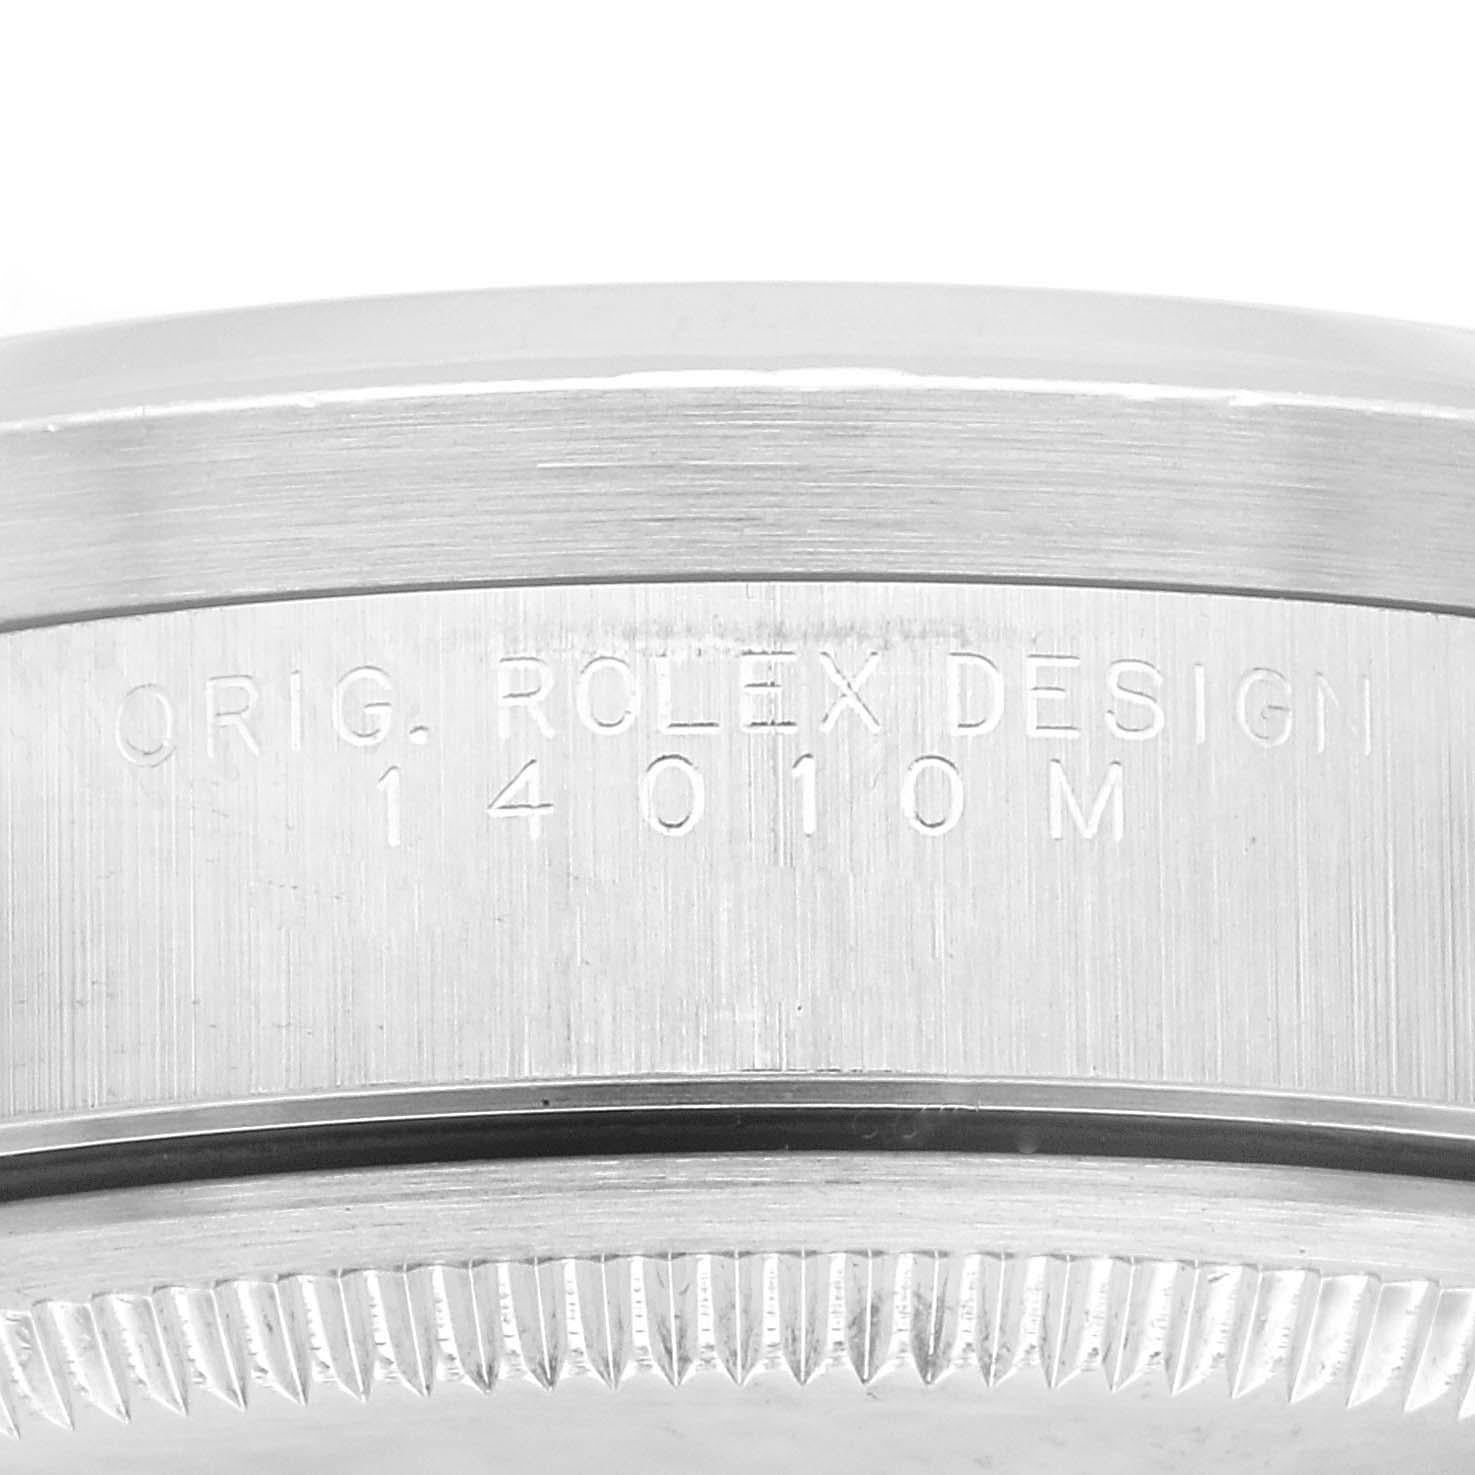 Rolex Air King Engine Turned Bezel Silver Dial Steel Mens Watch 14010. Mouvement automatique à remontage automatique. Boîtier en acier inoxydable de 34.0 mm de diamètre. Logo Rolex sur la couronne. Lunette en acier inoxydable tournée au moteur.